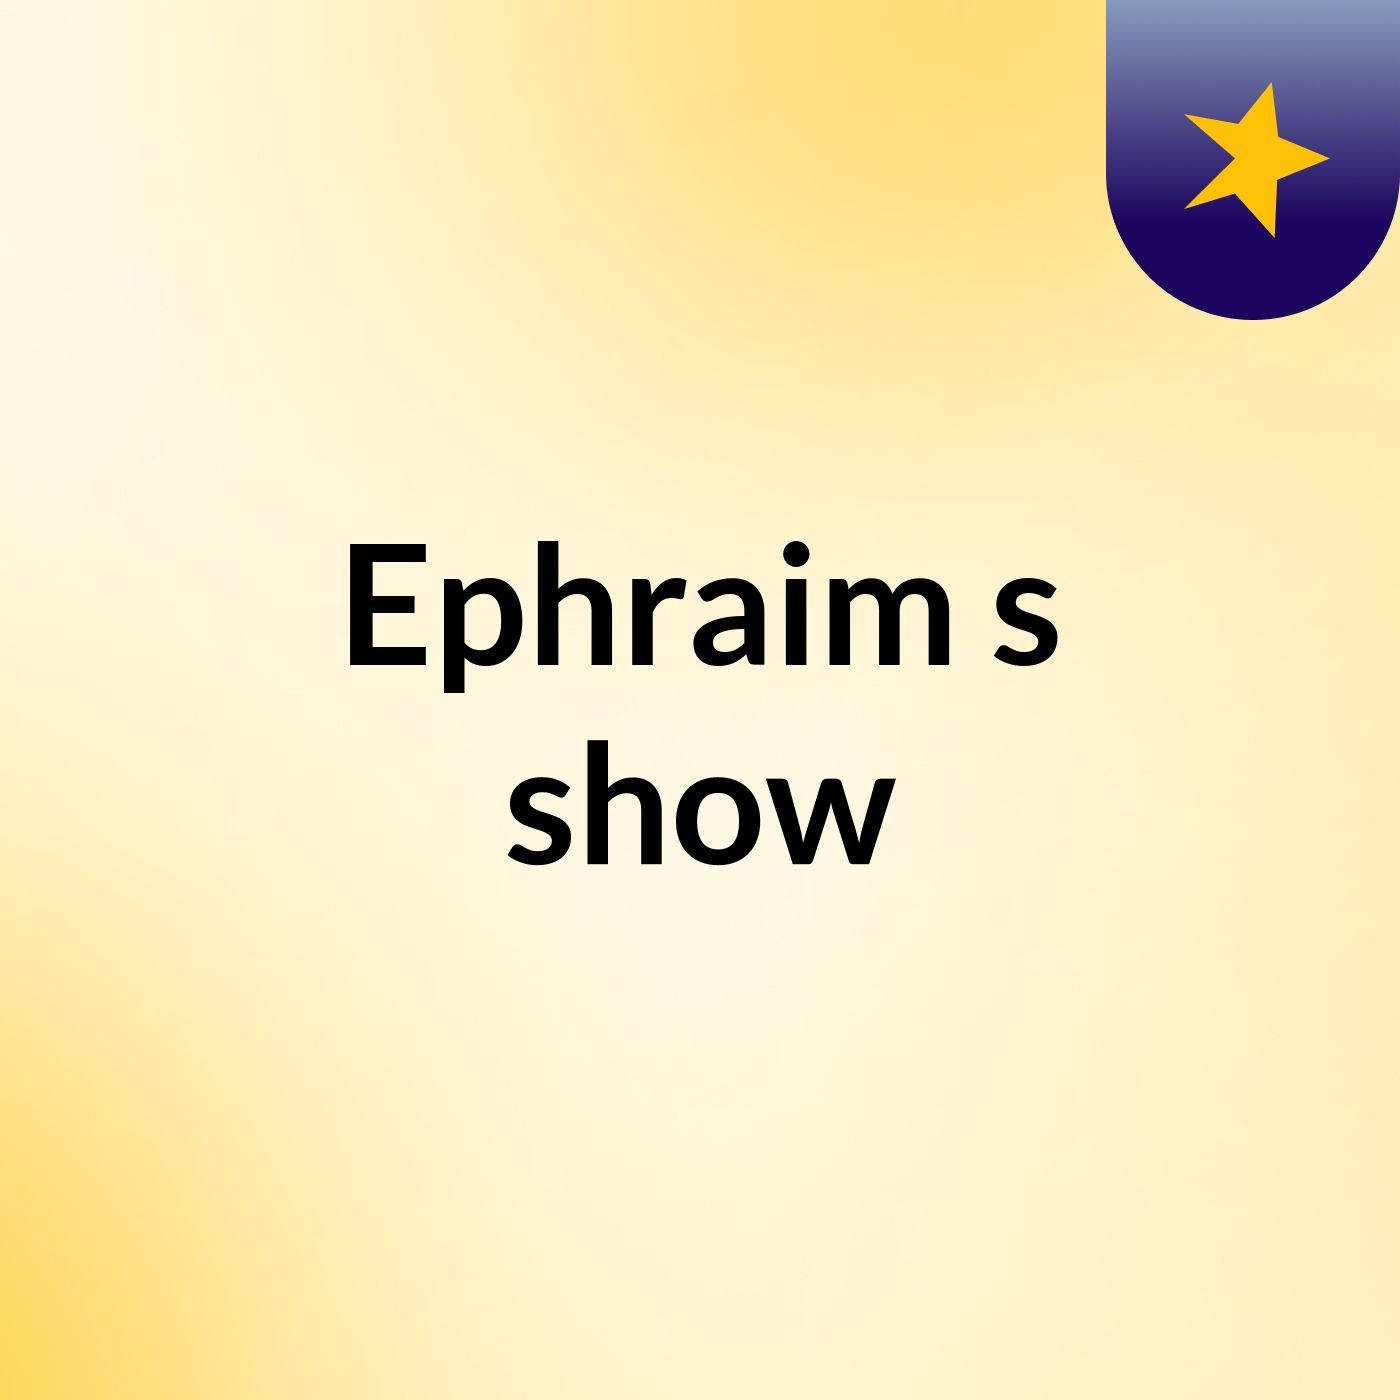 Ephraim's show